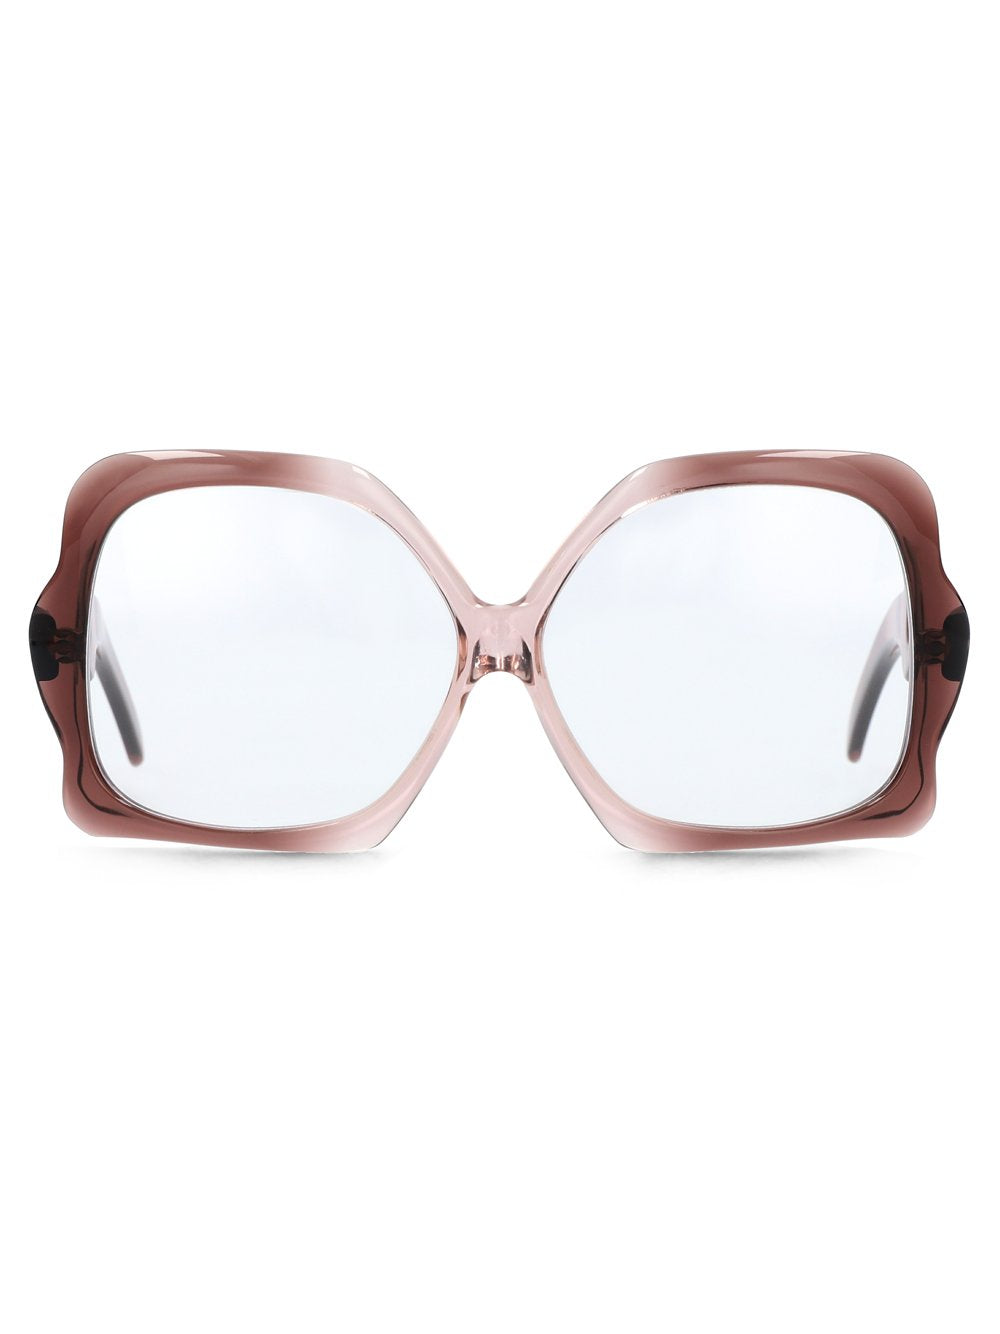 FRAMEFRANCE Woman Acetate Glasses & Frames 